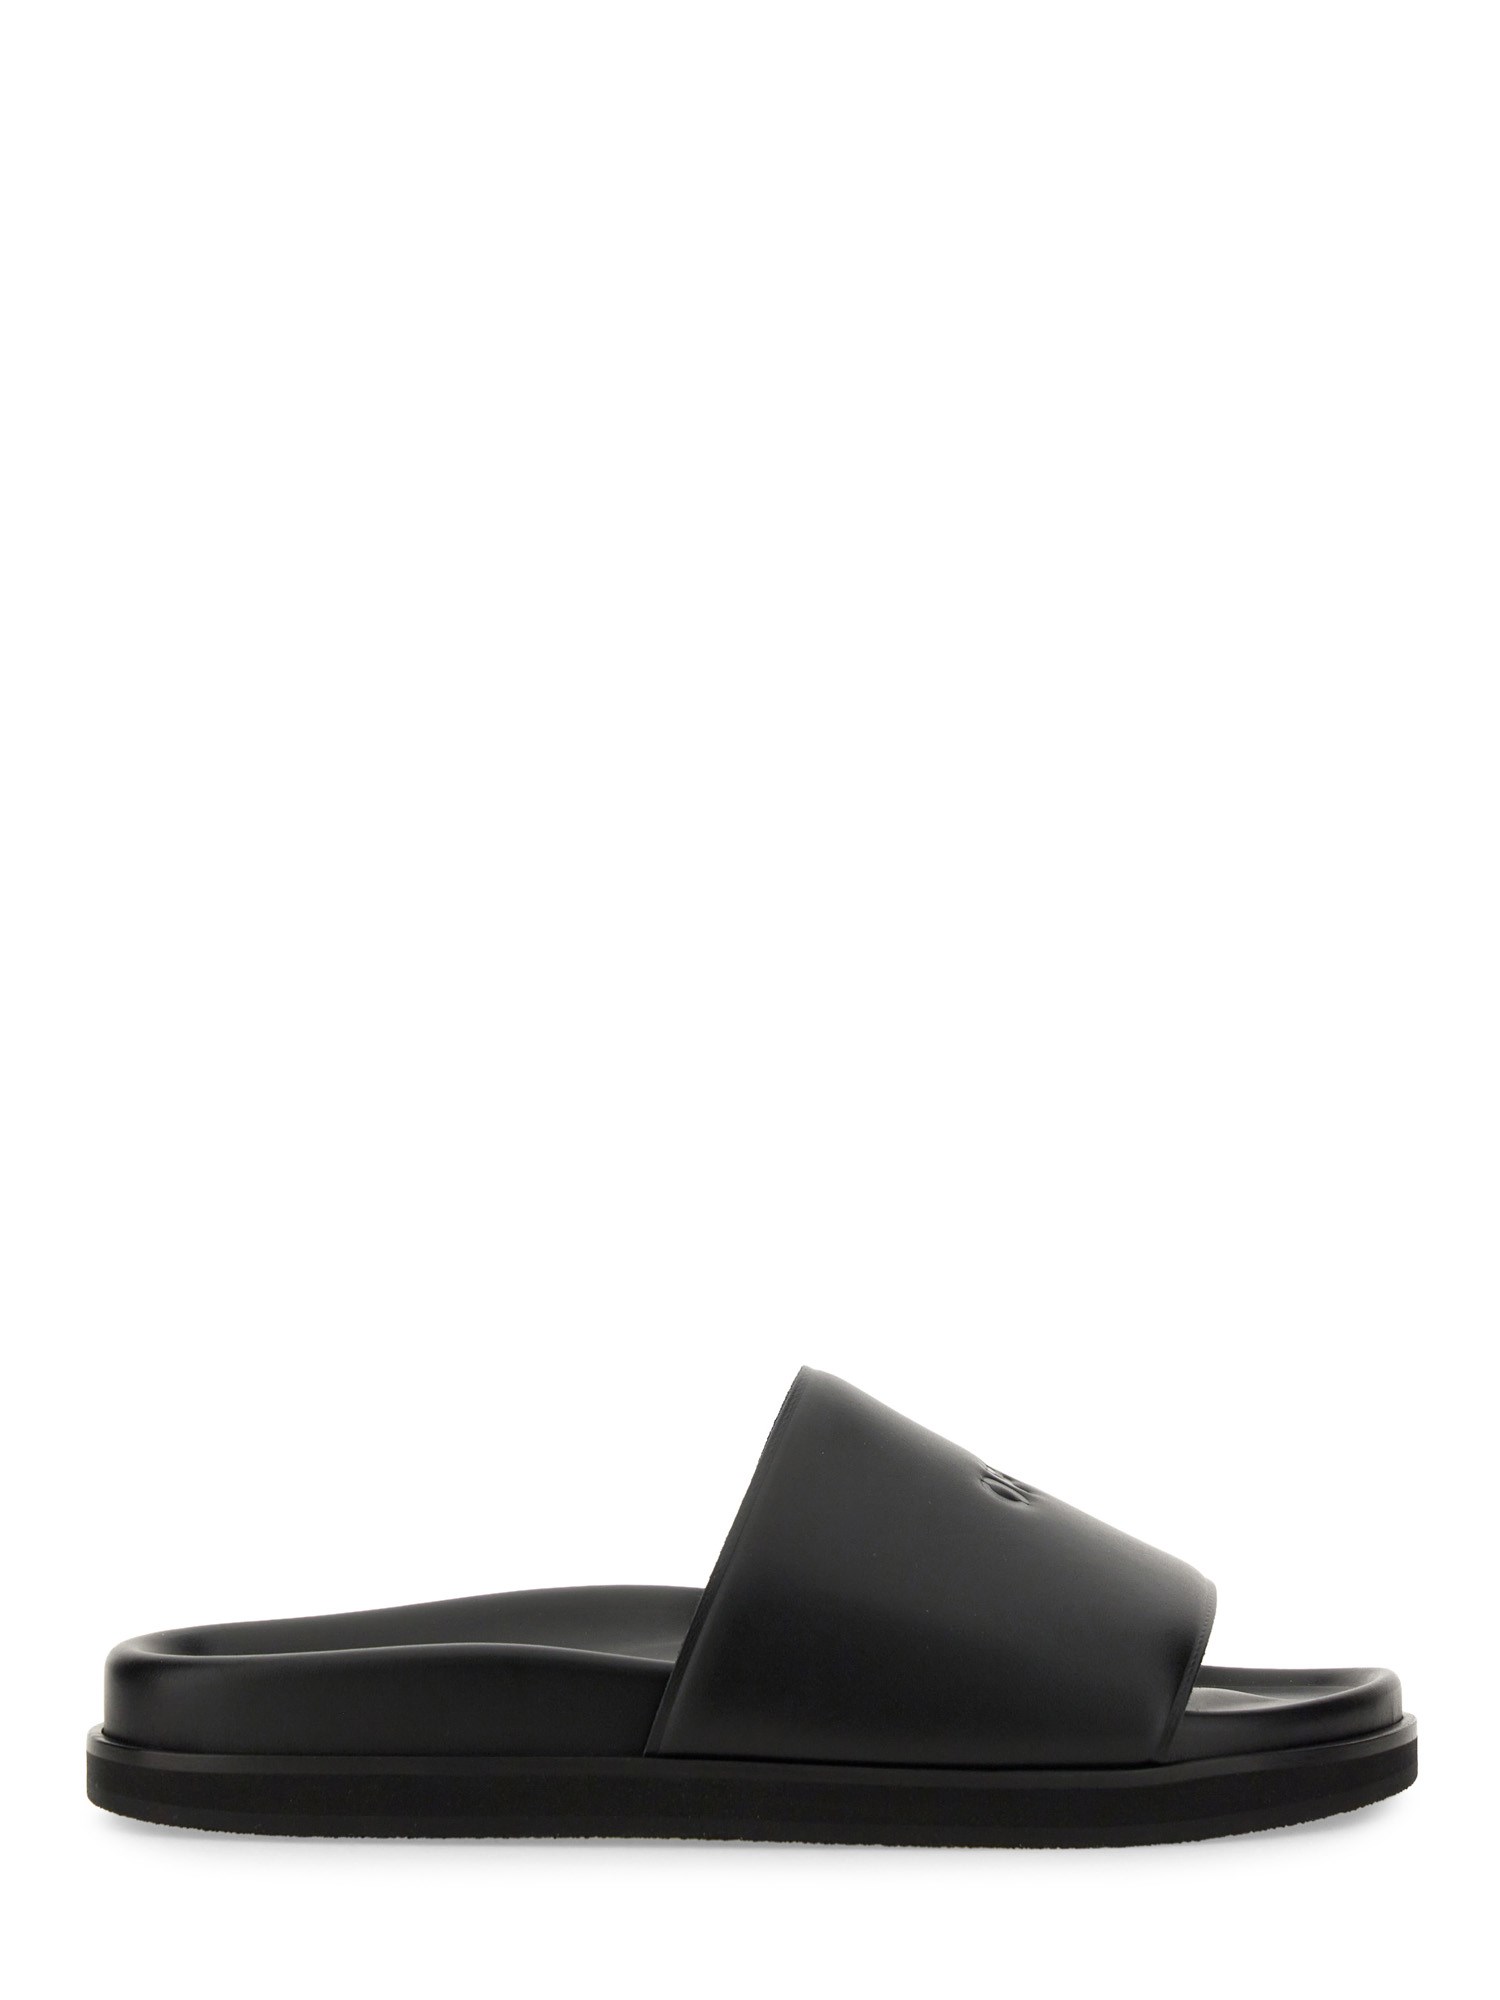 off-white slide sandal